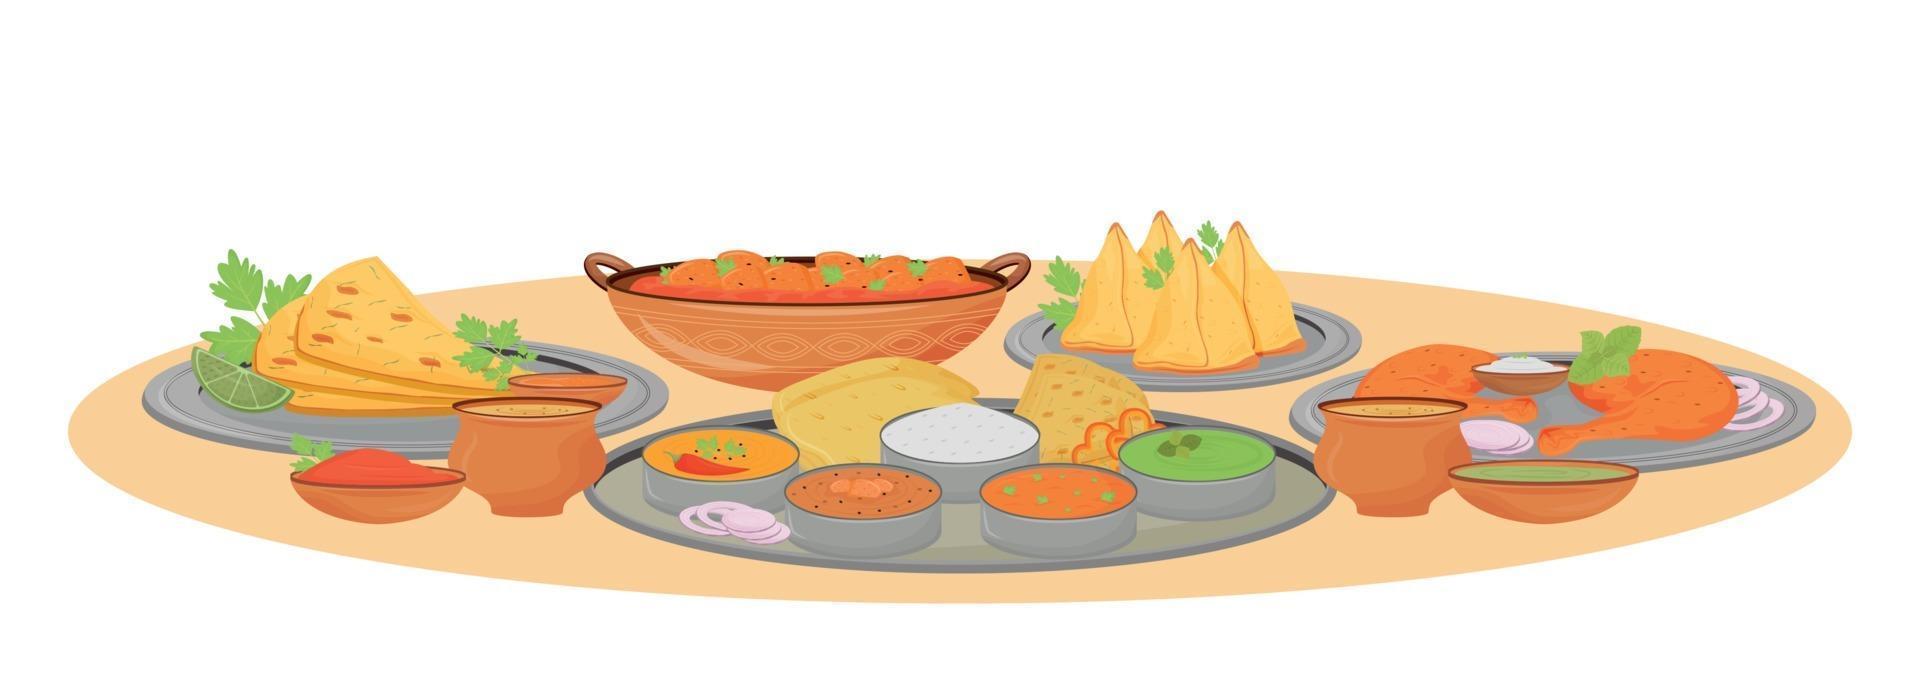 platos indios que sirven ilustración vectorial de dibujos animados. comidas de cocina tradicional y salsas picantes en objeto de color plano thali. Comida de restaurante indio, superficie de la mesa servida aislado sobre fondo blanco. vector